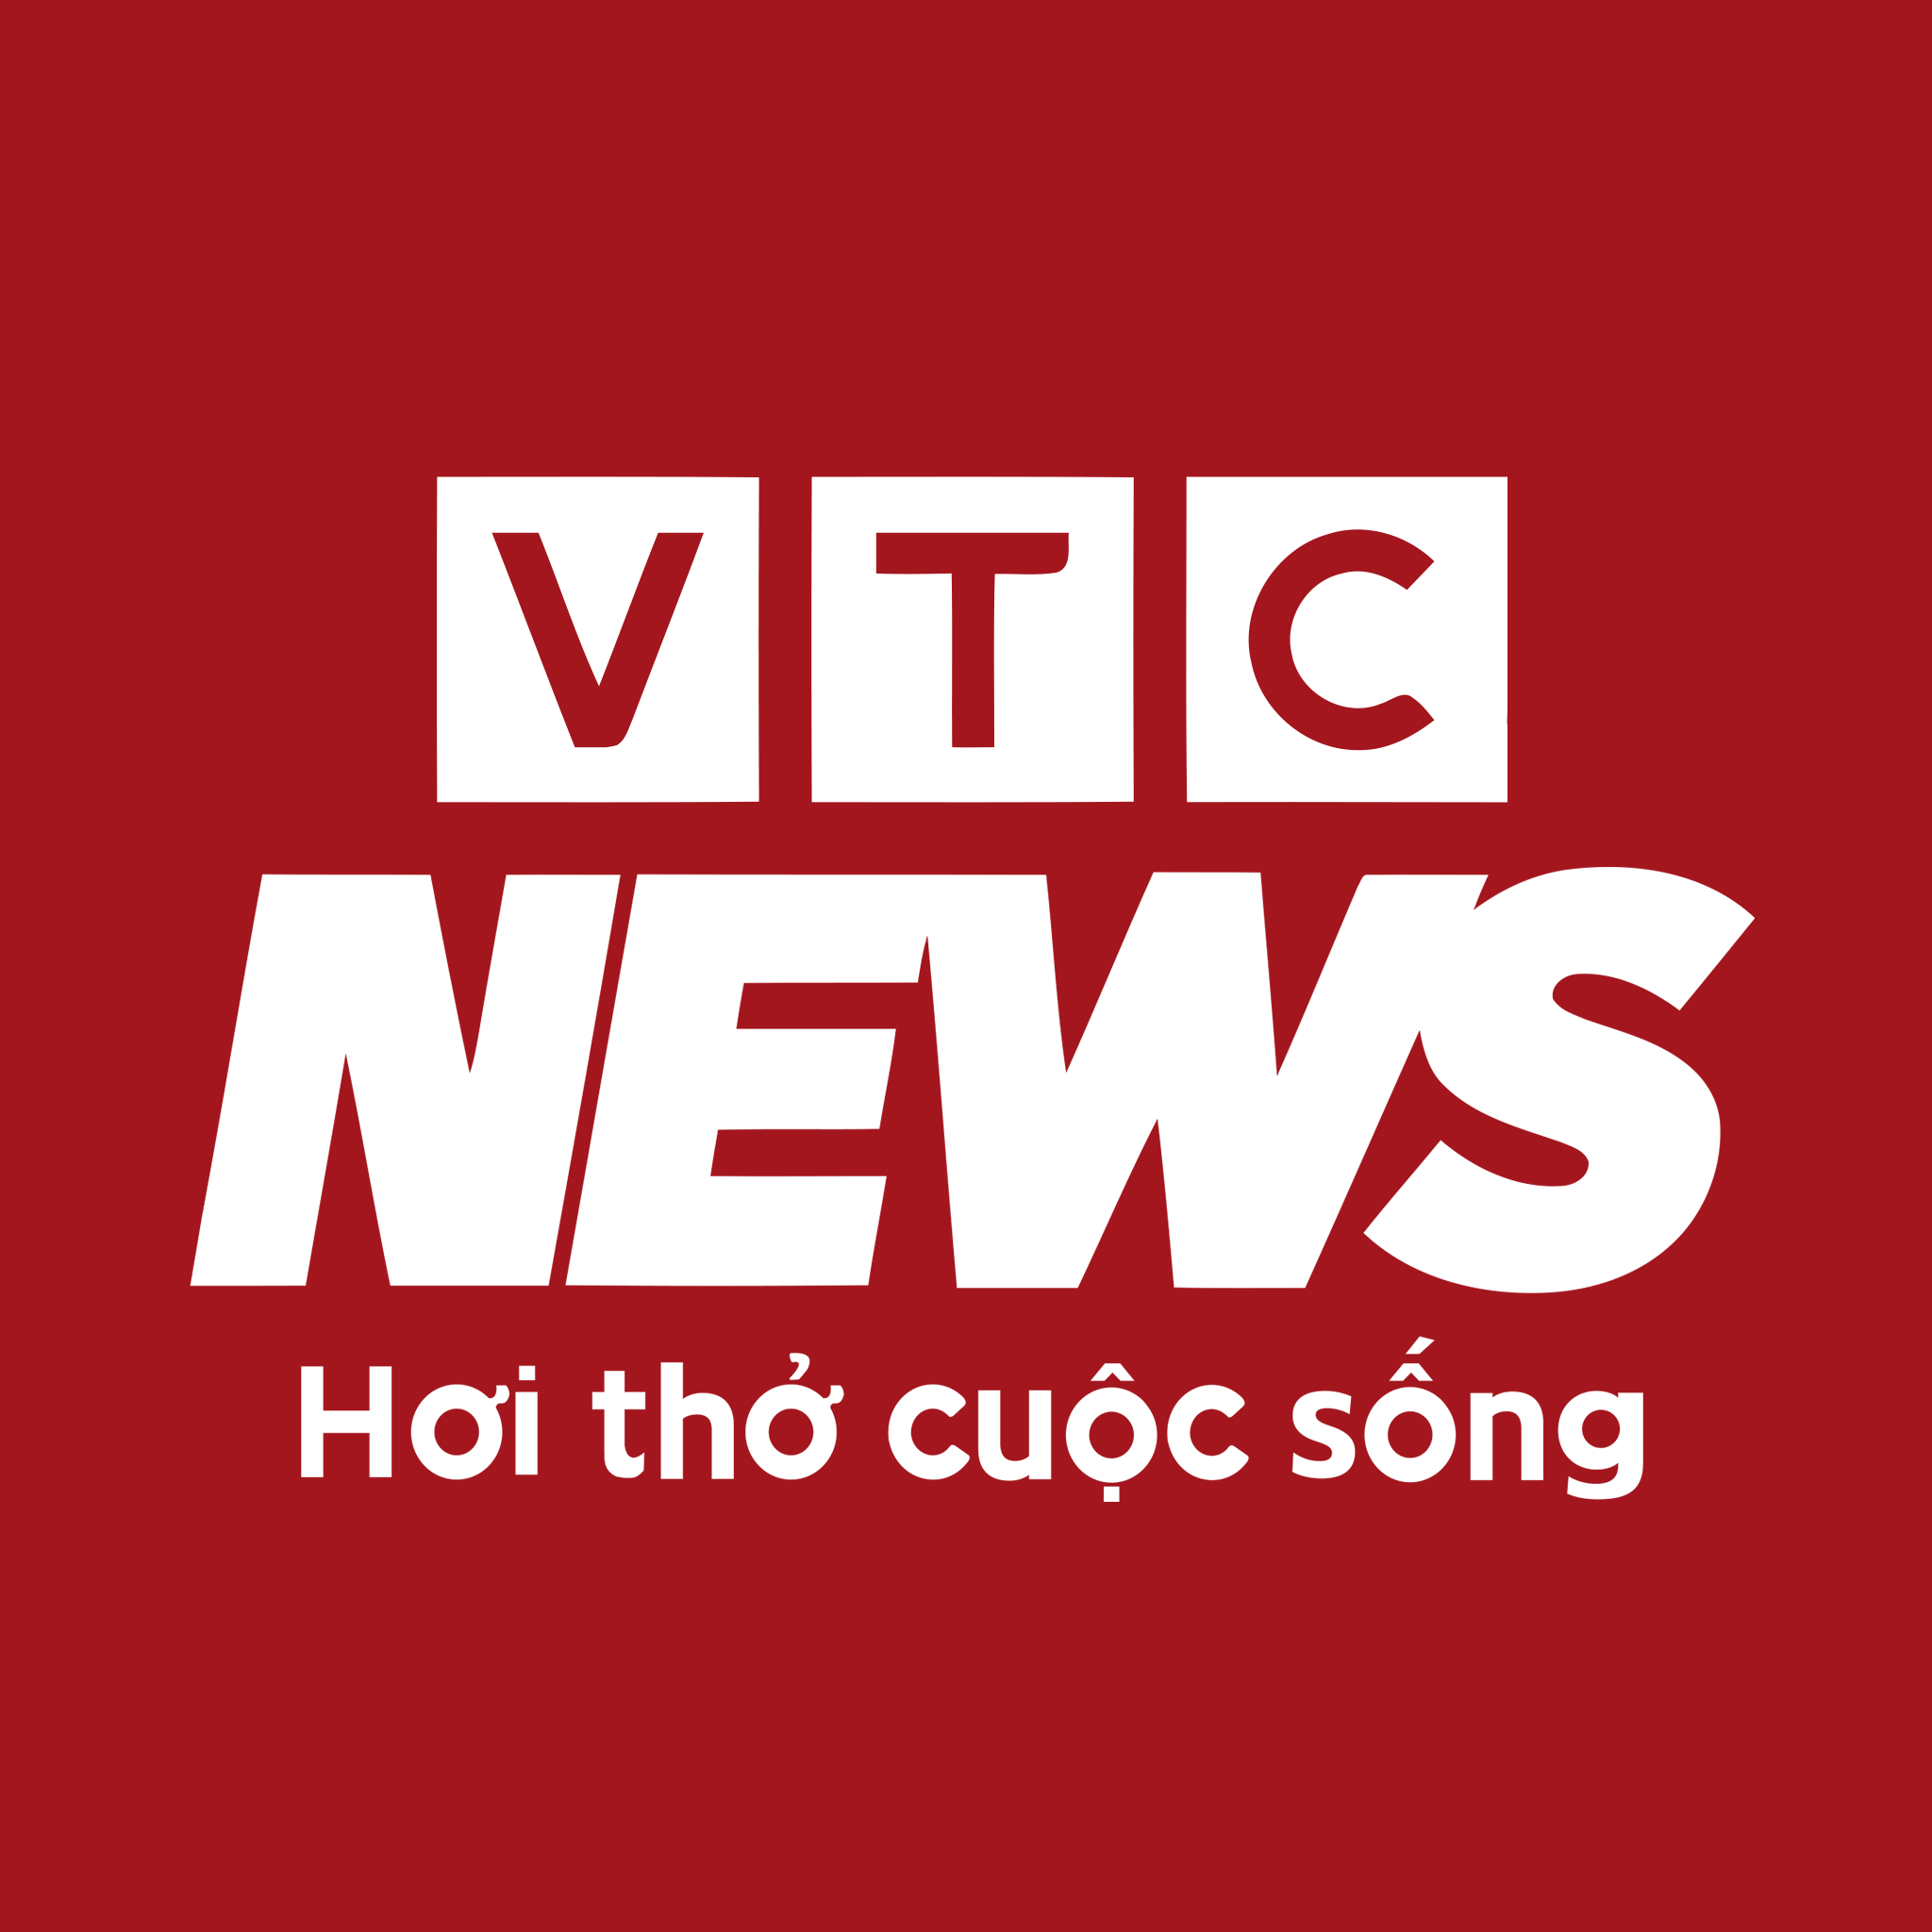 Báo VTC News nói về Van Điện Từ Tuấn Hưng Phát